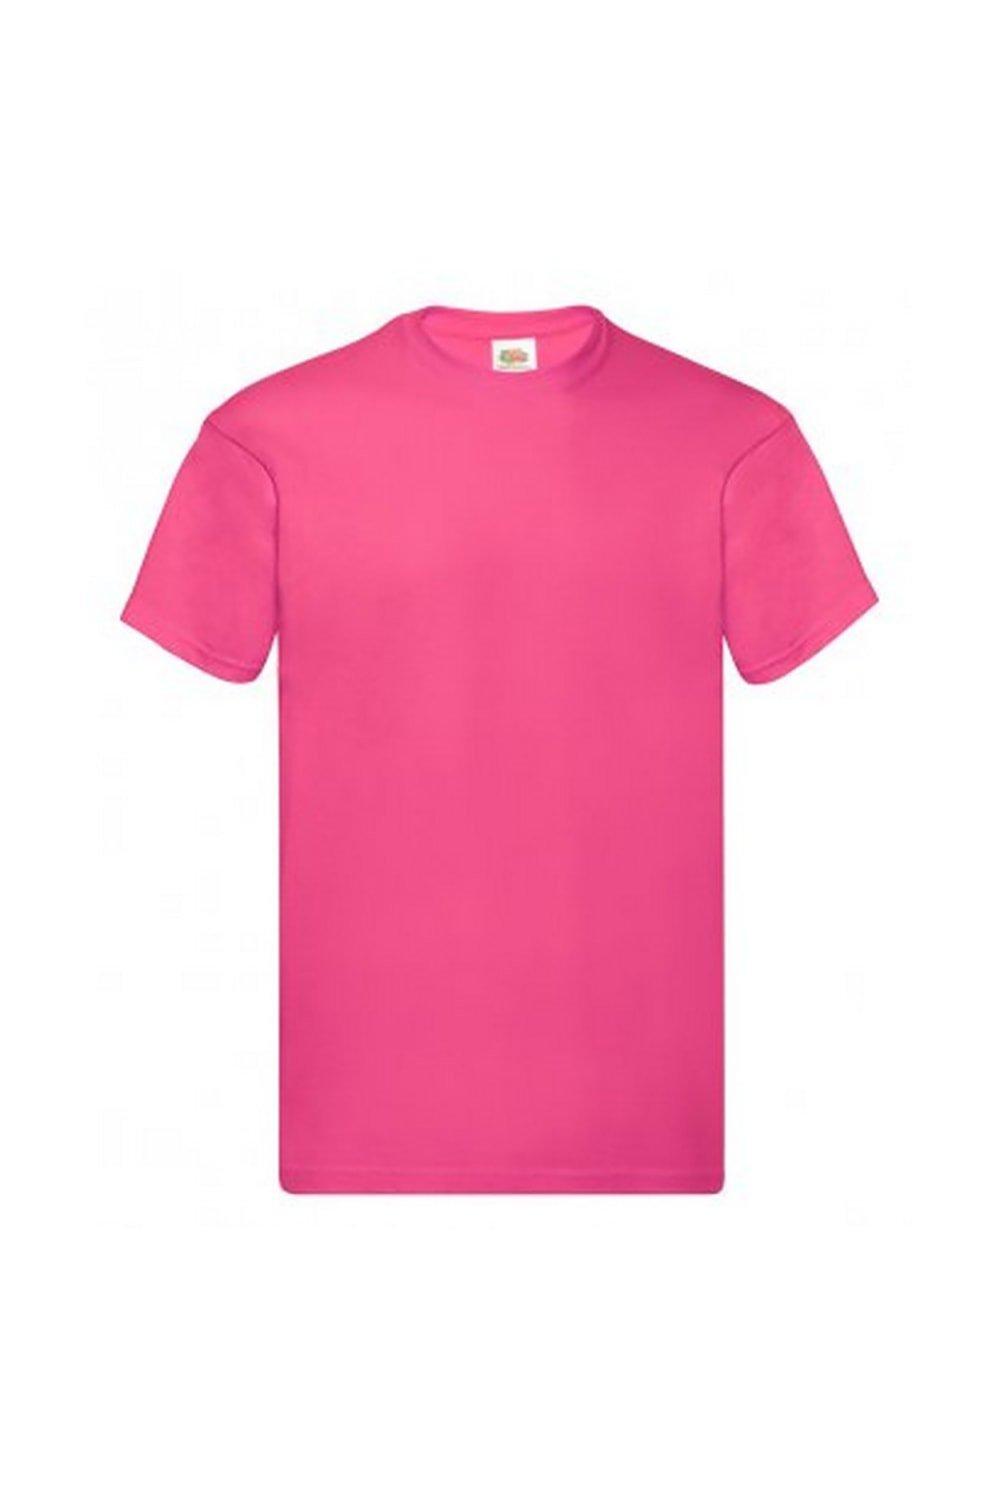 Оригинальная футболка с коротким рукавом Fruit of the Loom, розовый